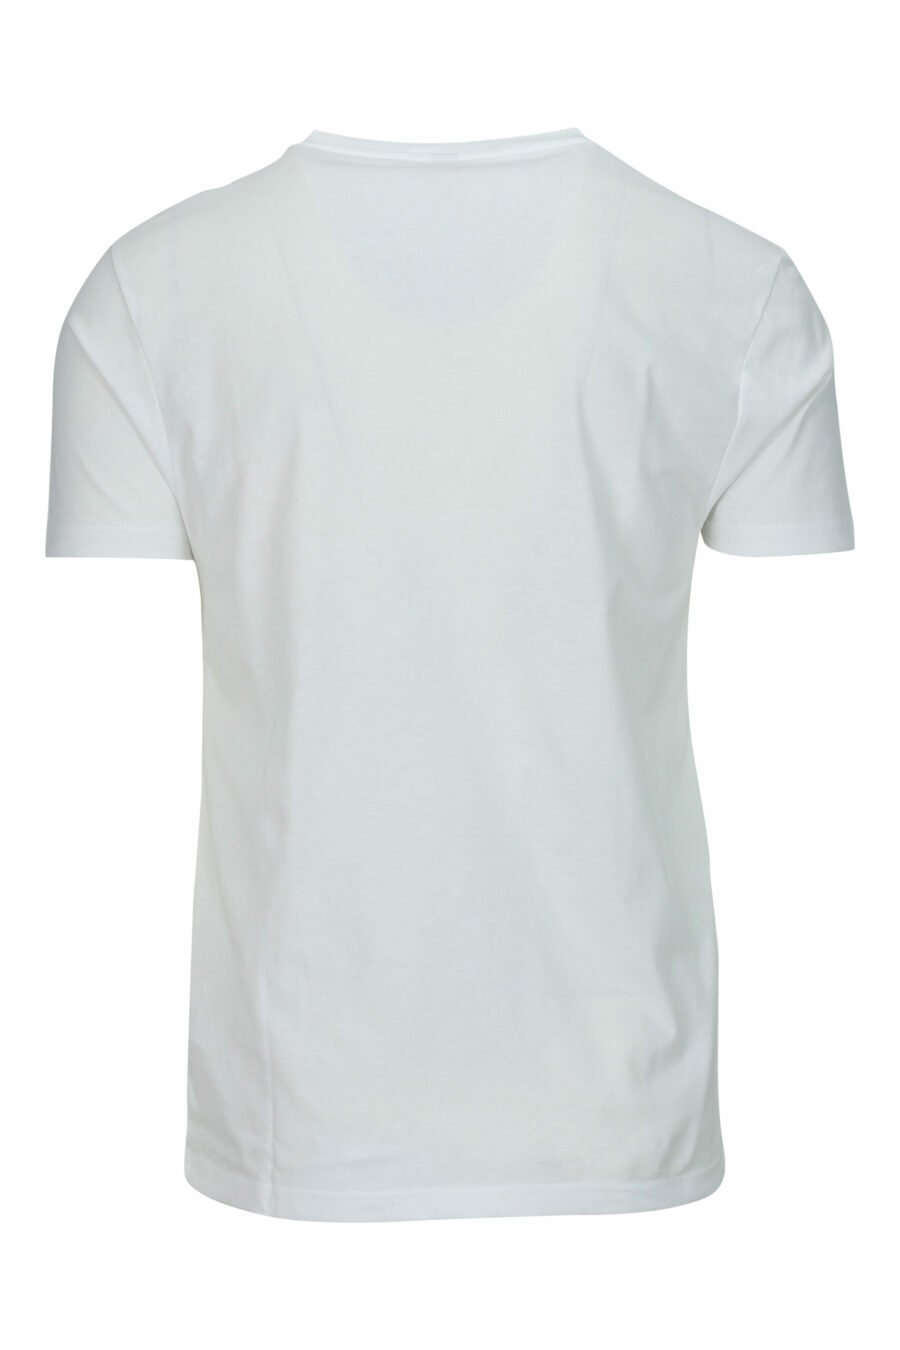 T-shirt blanc avec logo noir et ruban rouge sur les épaules - 667113604213 1 scaled